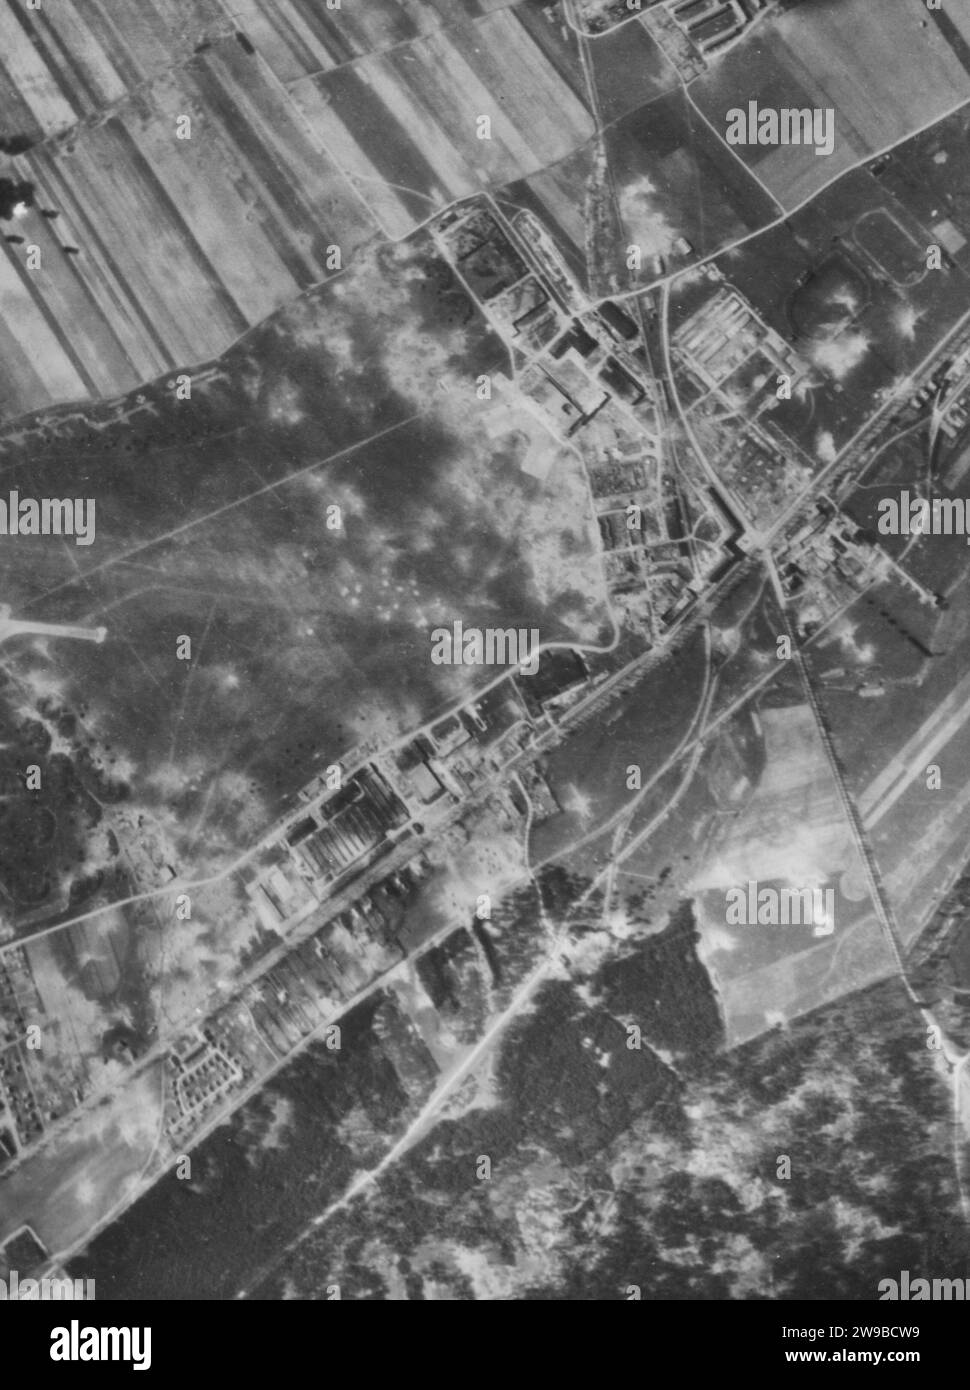 Das Messerschmitt-Versuchszentrum und DAS BOMBERMONTAGEWERK ME 410 in Augsburg waren eines der Ziele für die Boeing B-17-Festungen der 8. AF während ihrer Tageslichtmission vom 13. April 44. Dieses Foto wurde kurz vor Beginn des Angriffs aufgenommen. Stockfoto